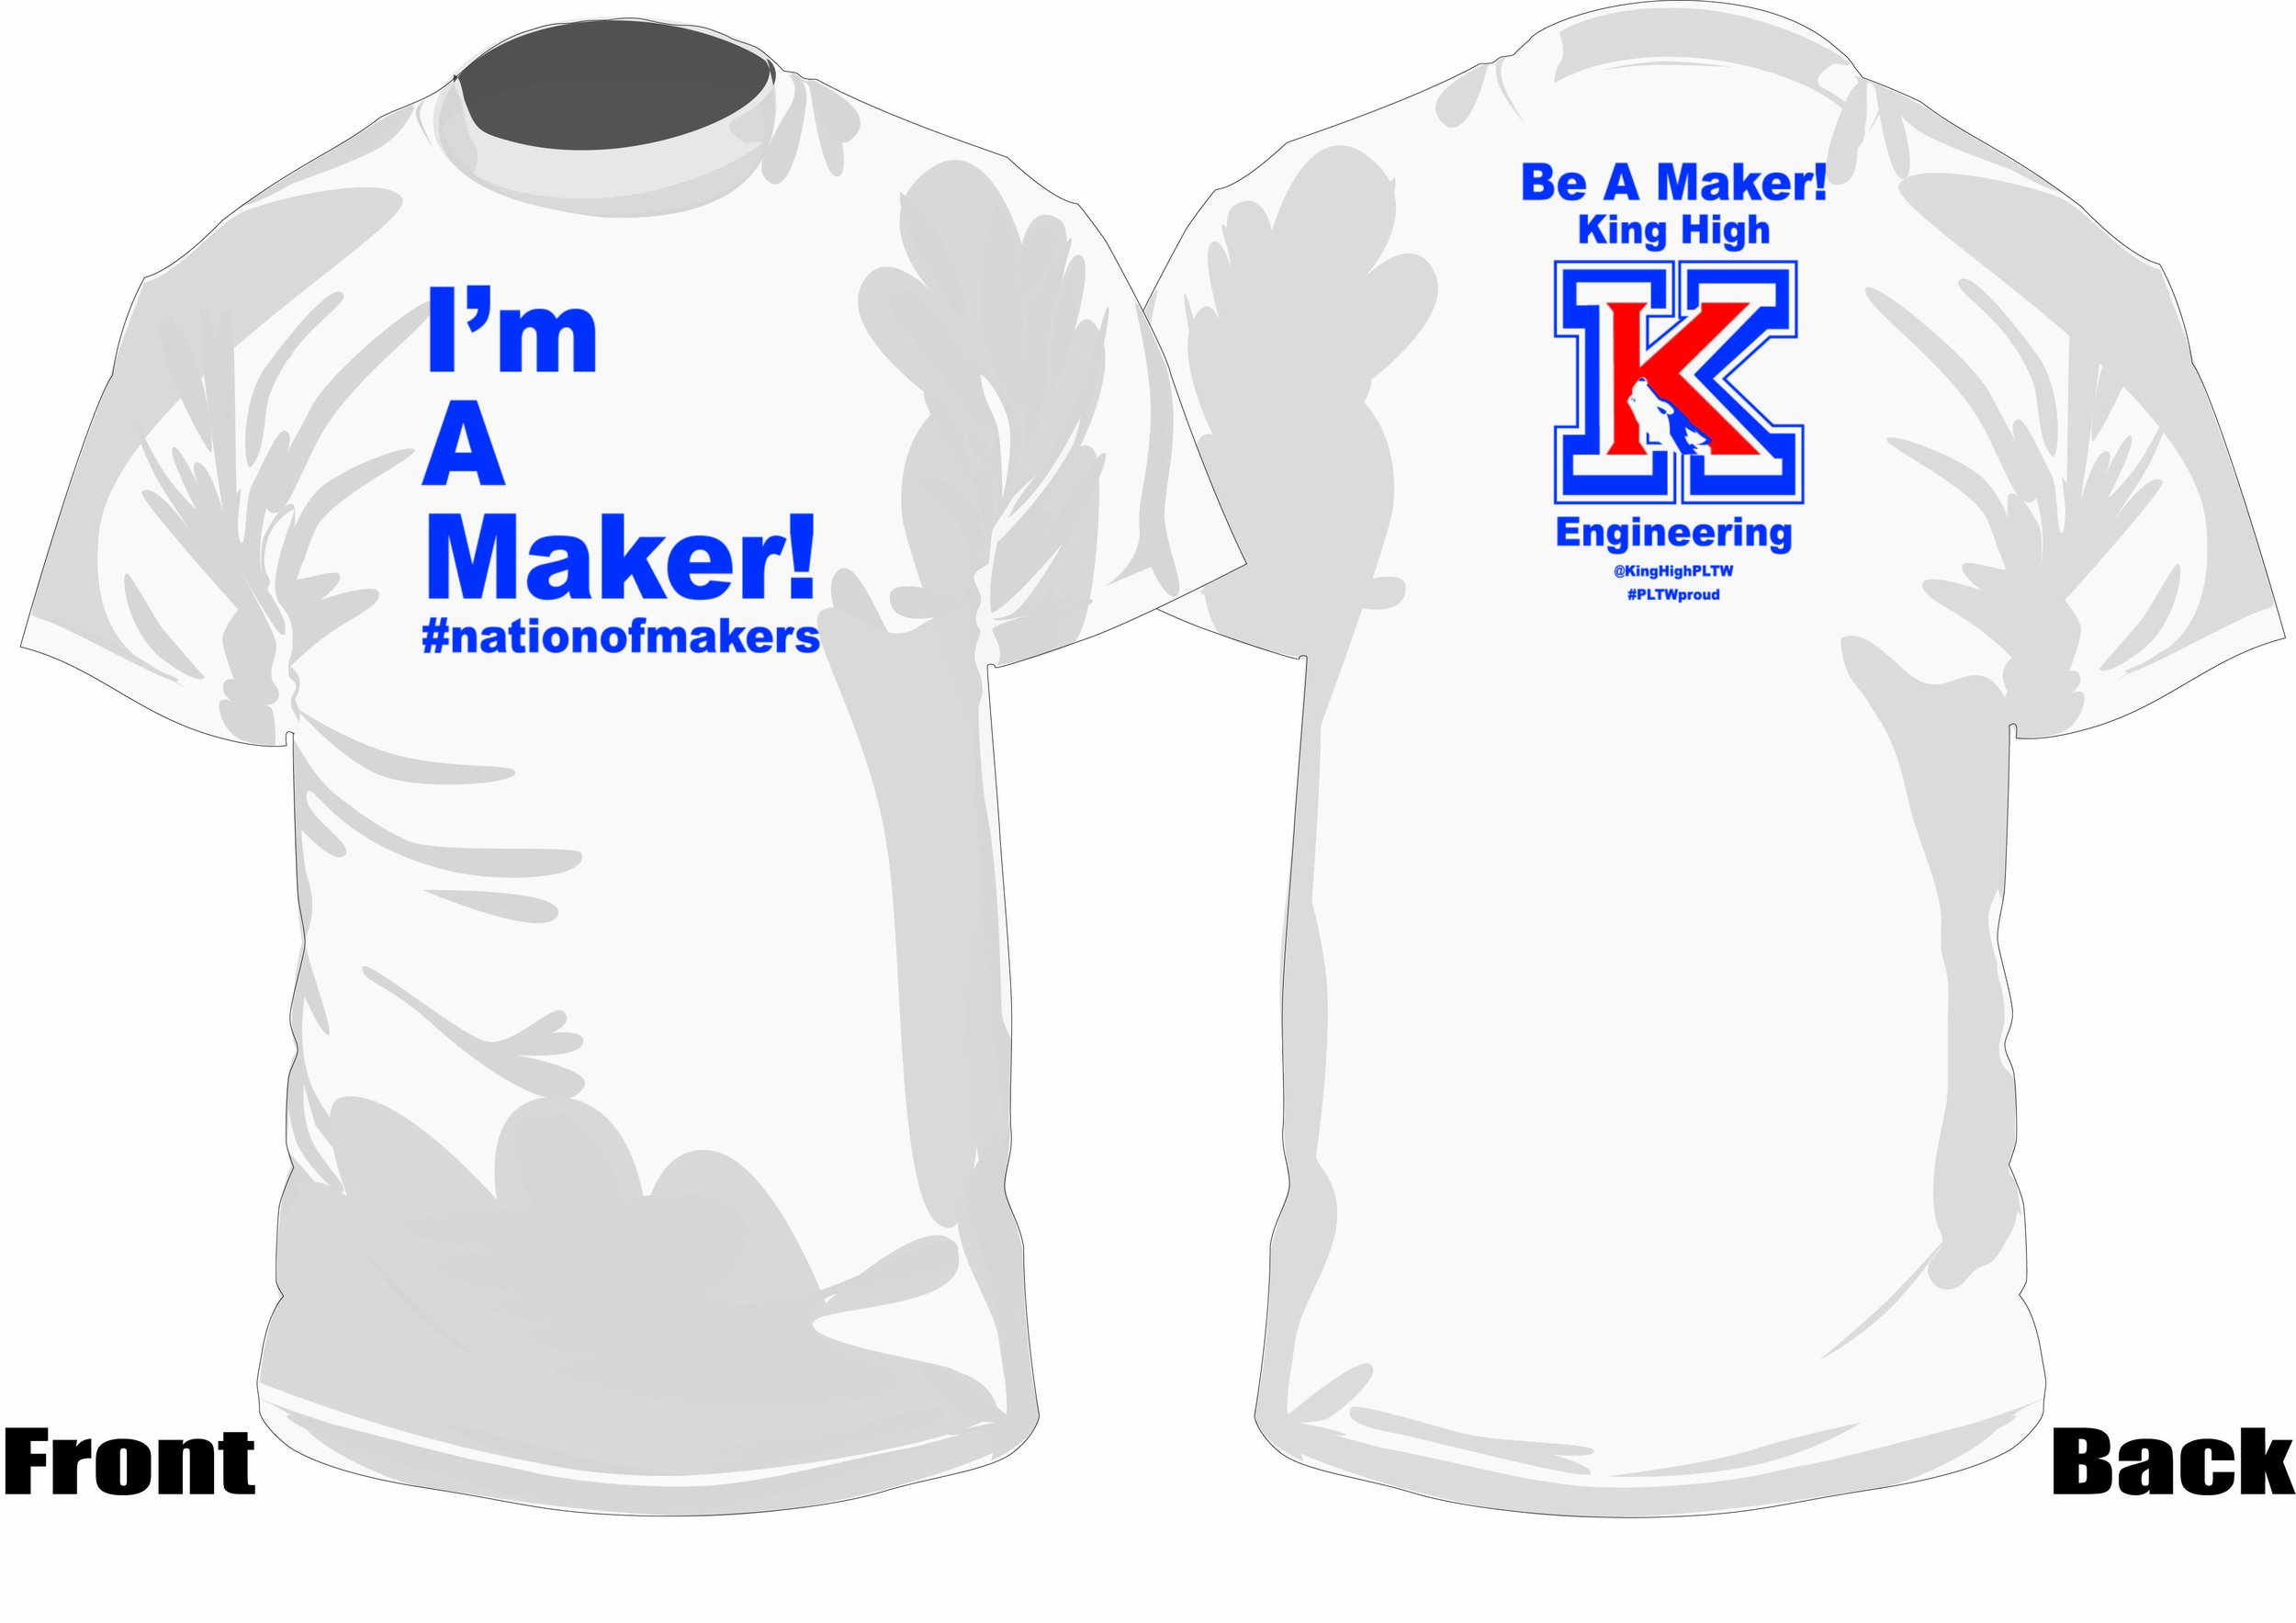 King Maker team.jpg